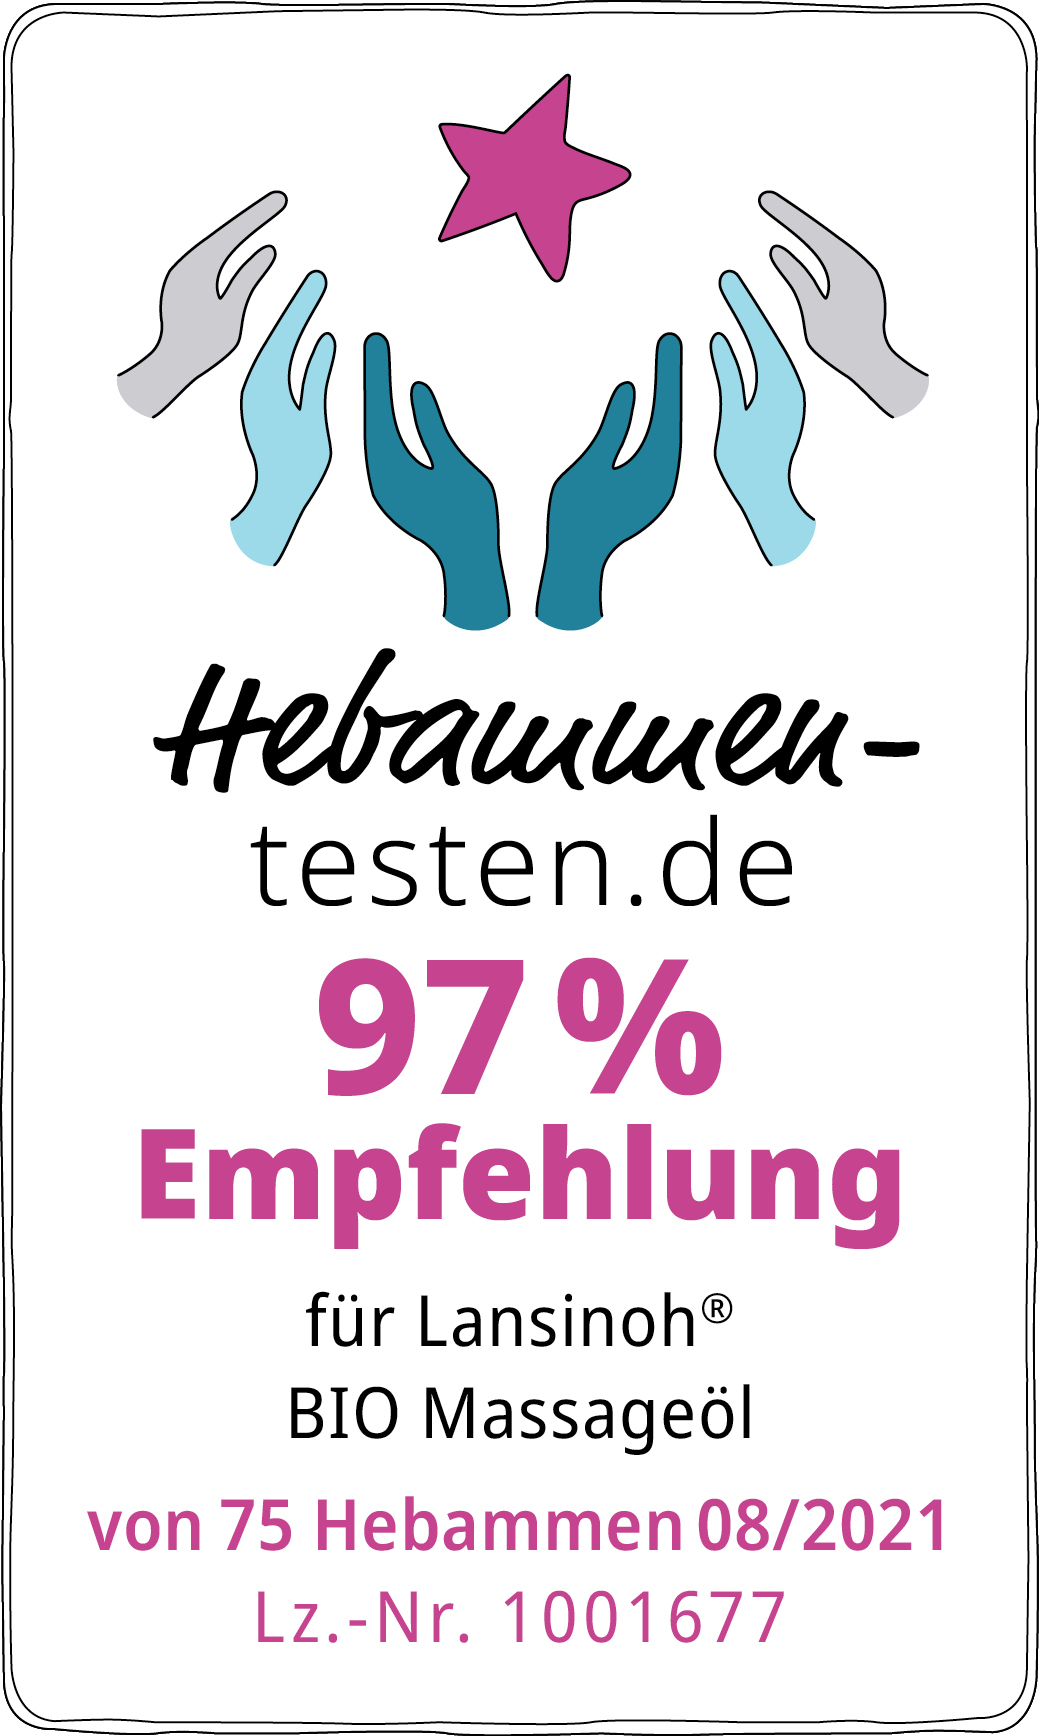 Hebammen-testen.de Siegel für Lansinoh Bio Massageöl 97 % Empfehlung von 75 Hebammen im August 2021 getestet.